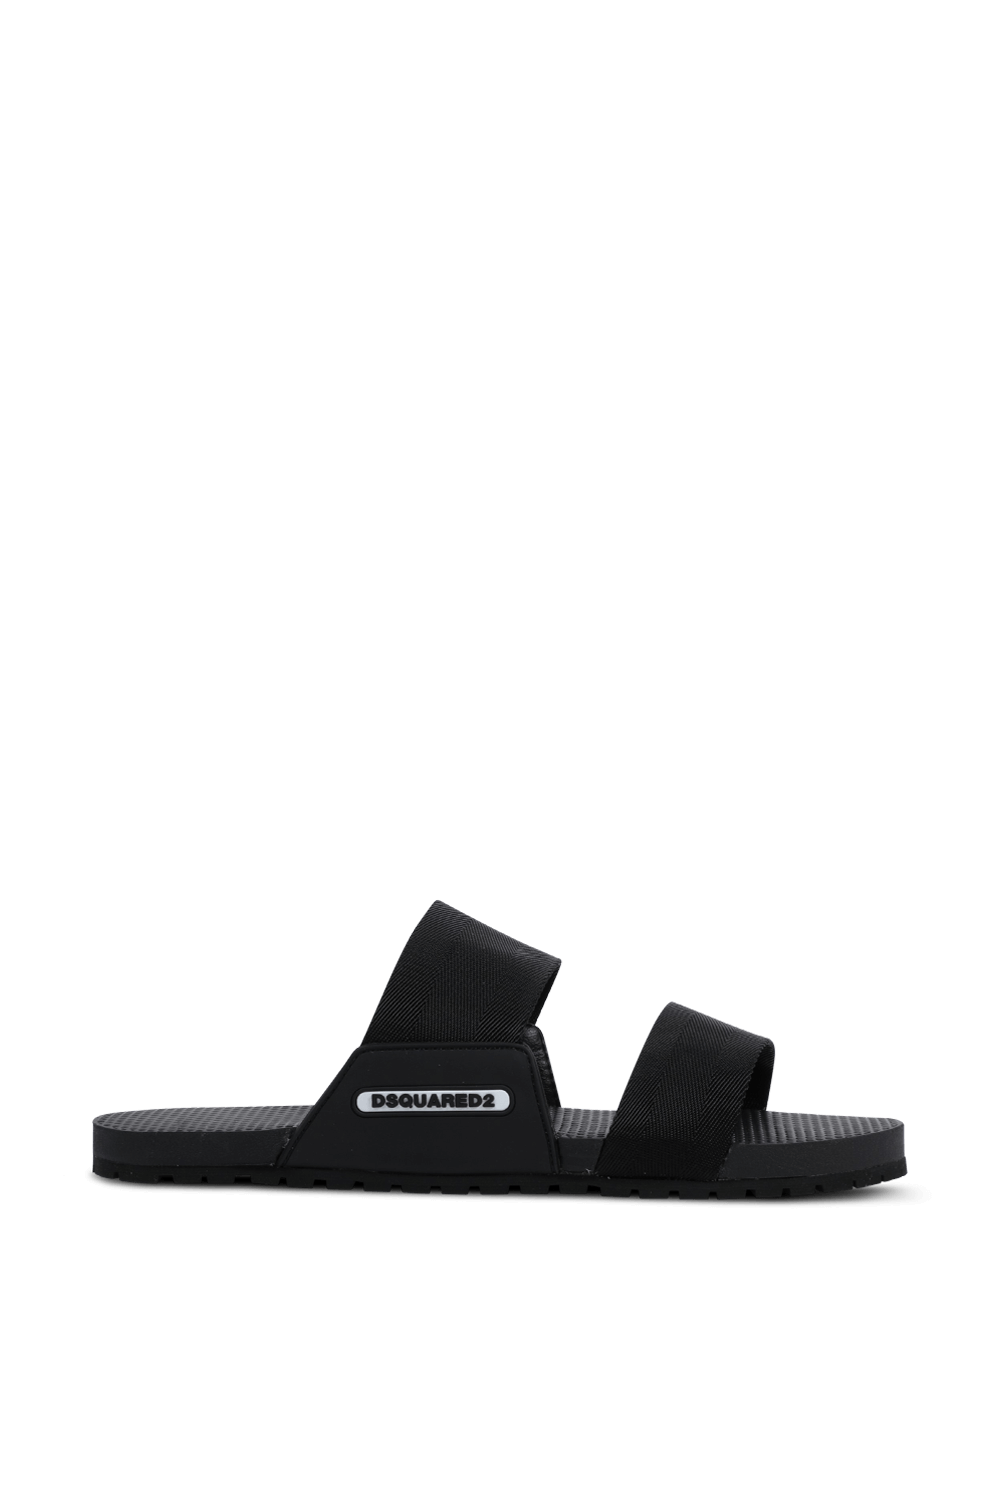 DSQUARED Slide Sandals in Black DSQUARED2